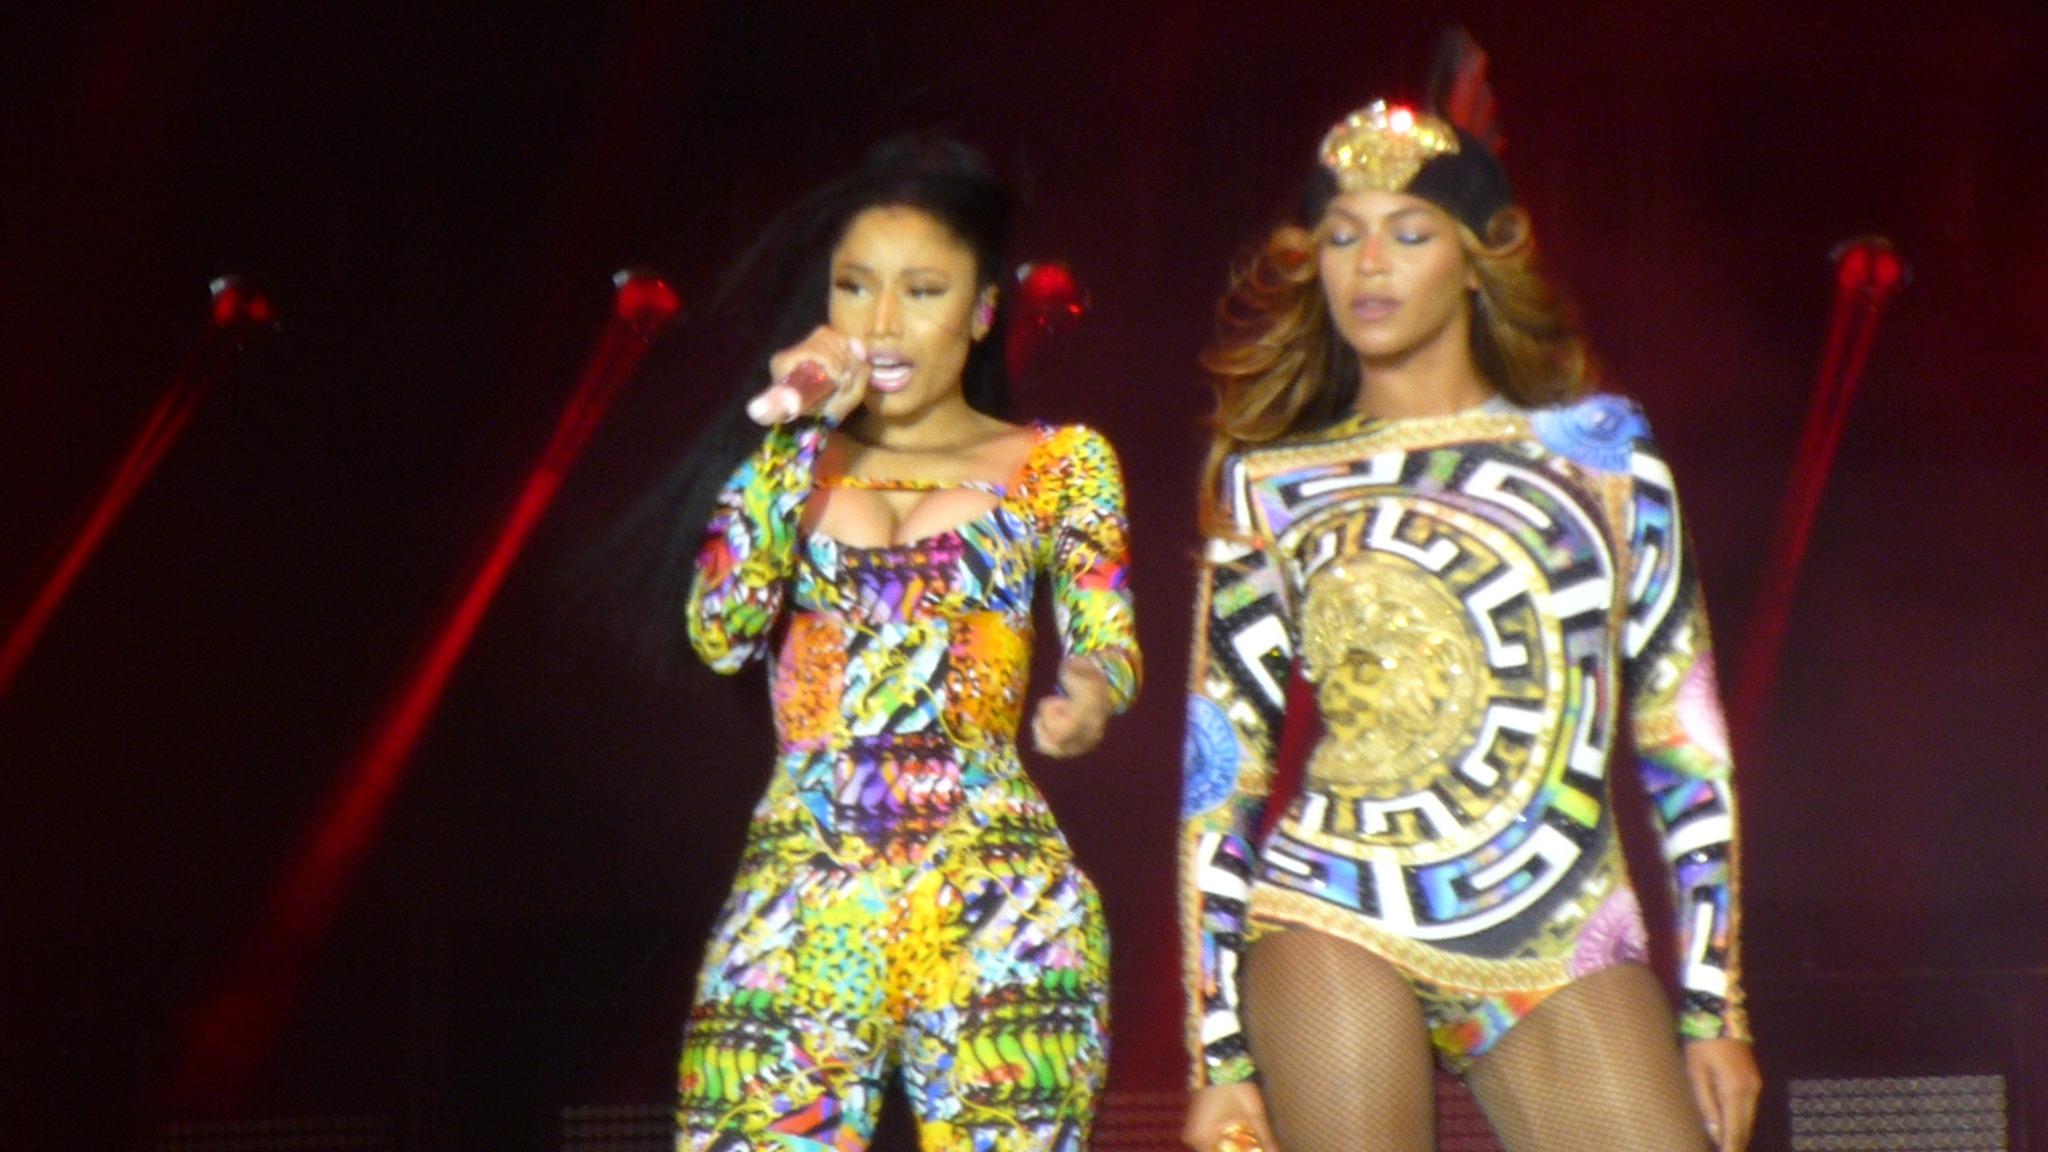 Beyonc and Nicki Minaj perform Flawless remix in Paris 2048x1152